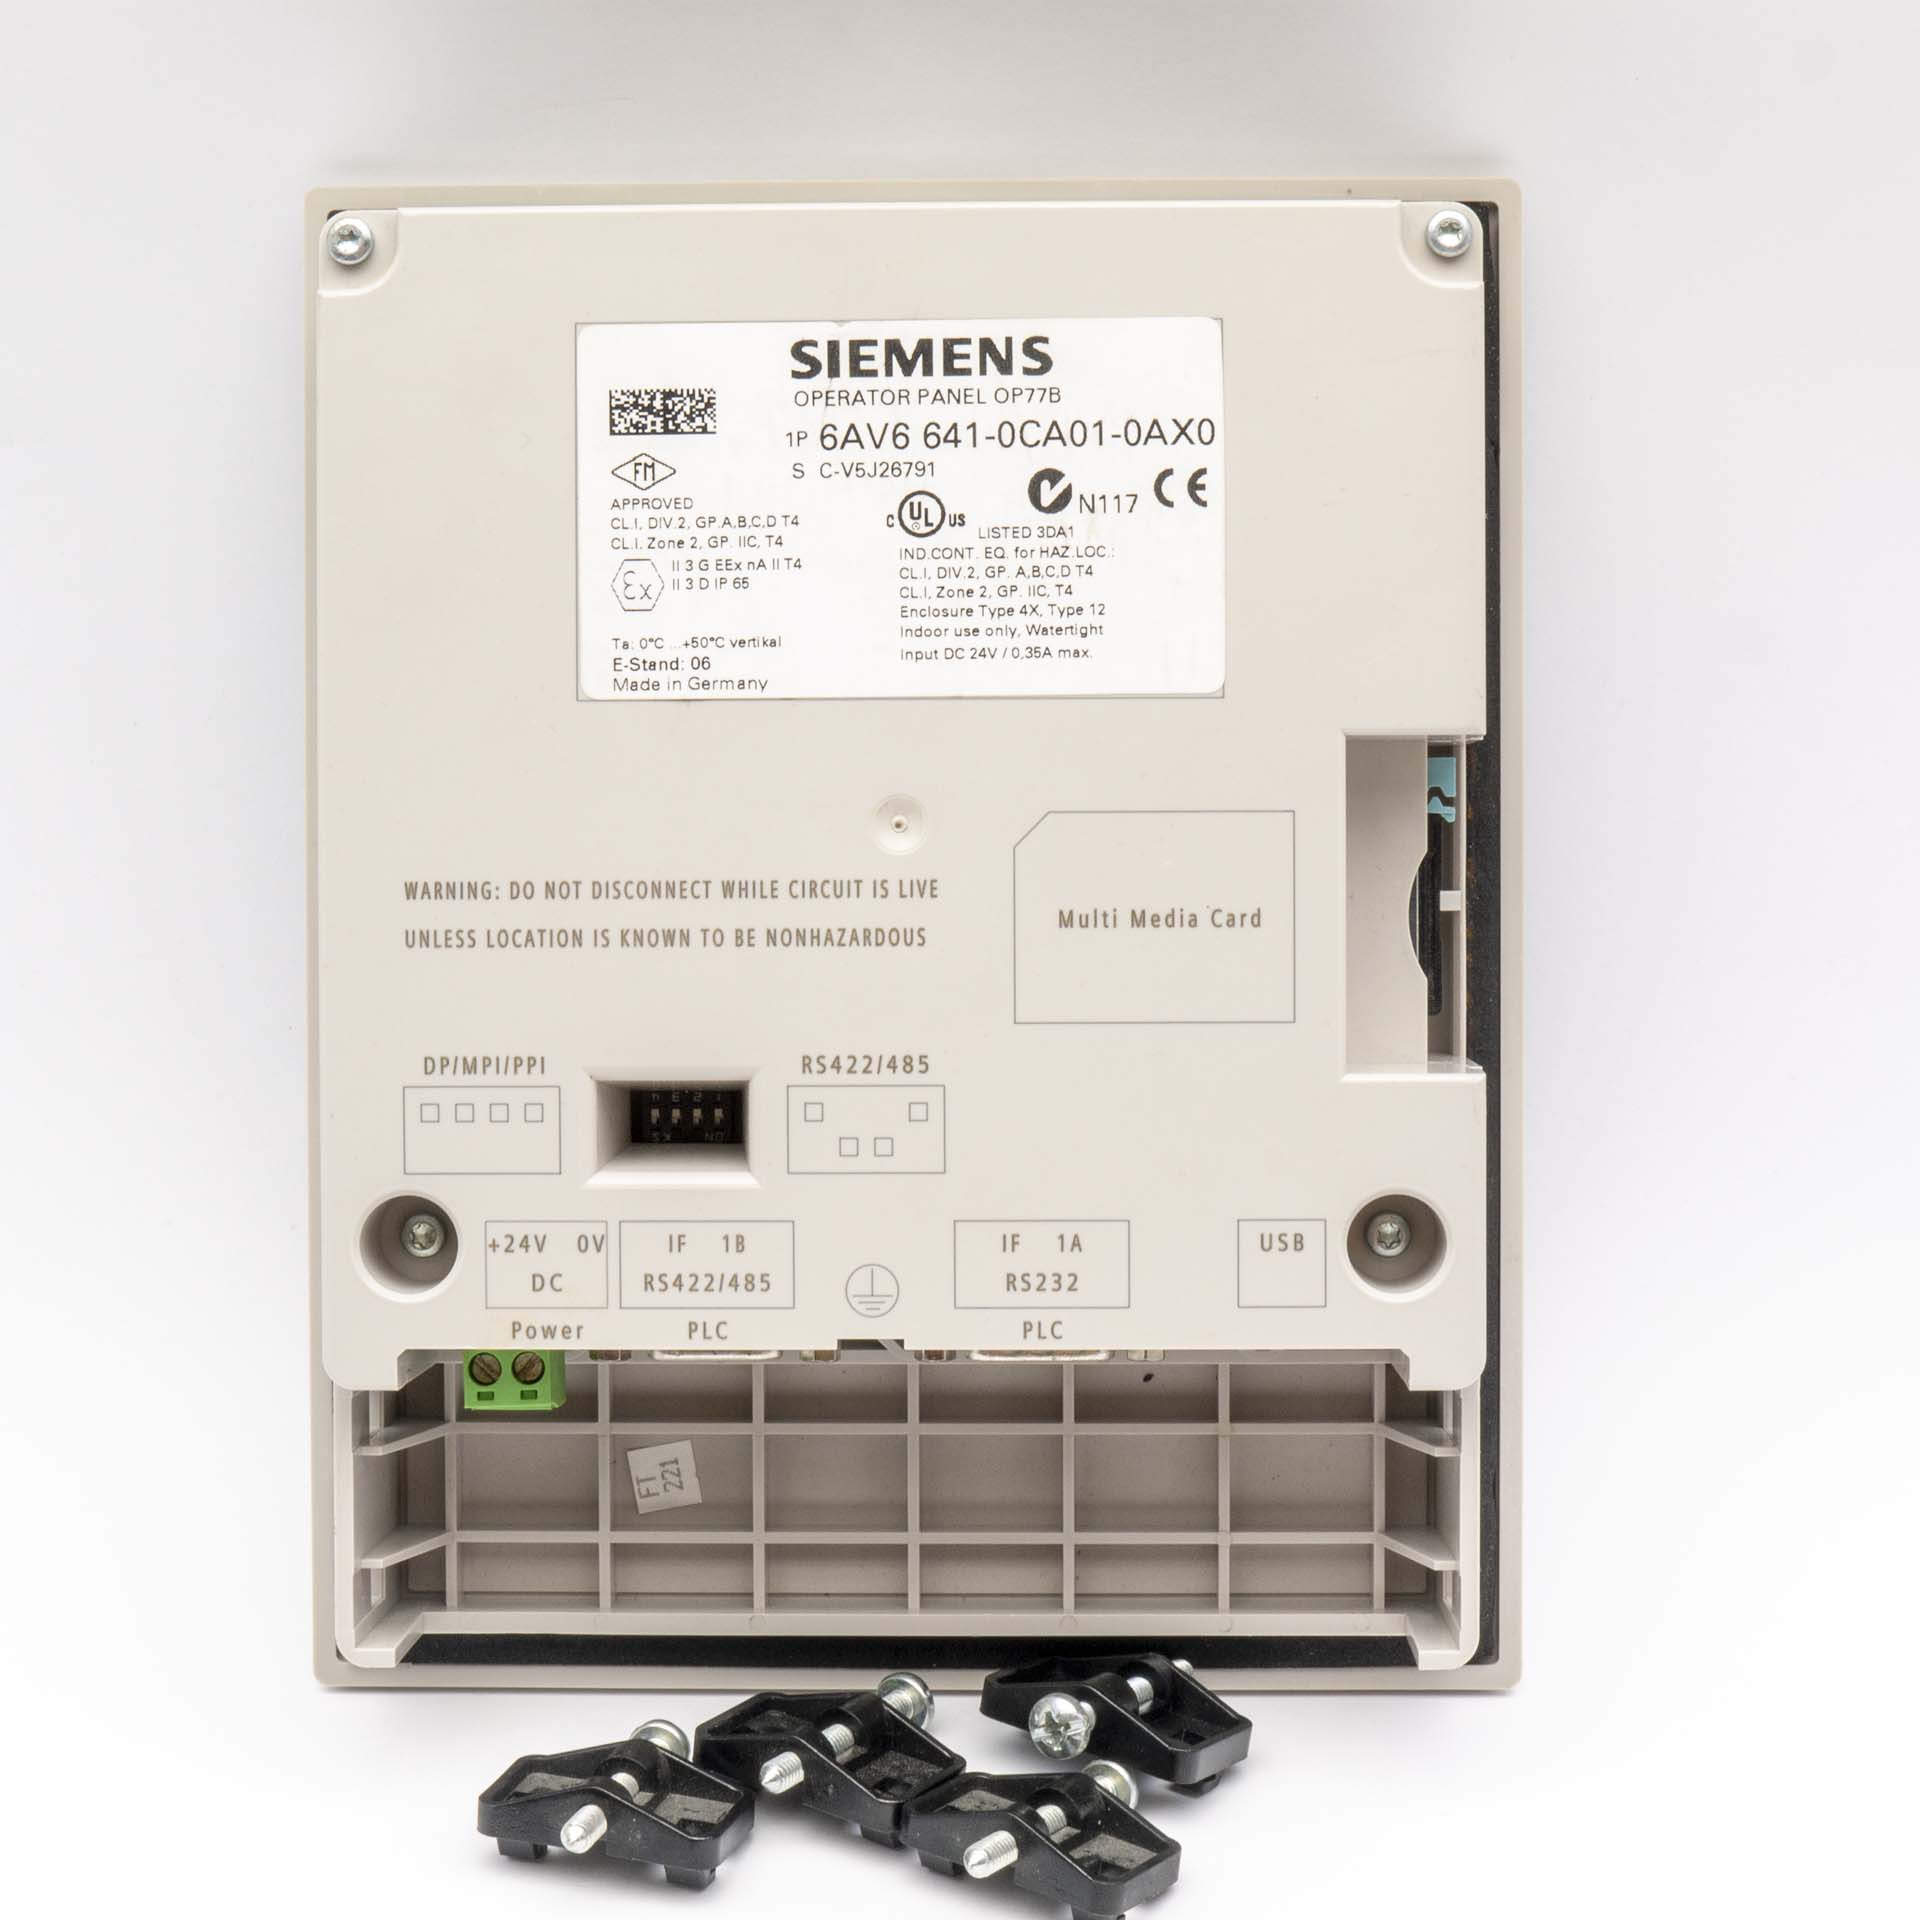 Siemens 6AV6 641-0CA01-0AX0 OP77B